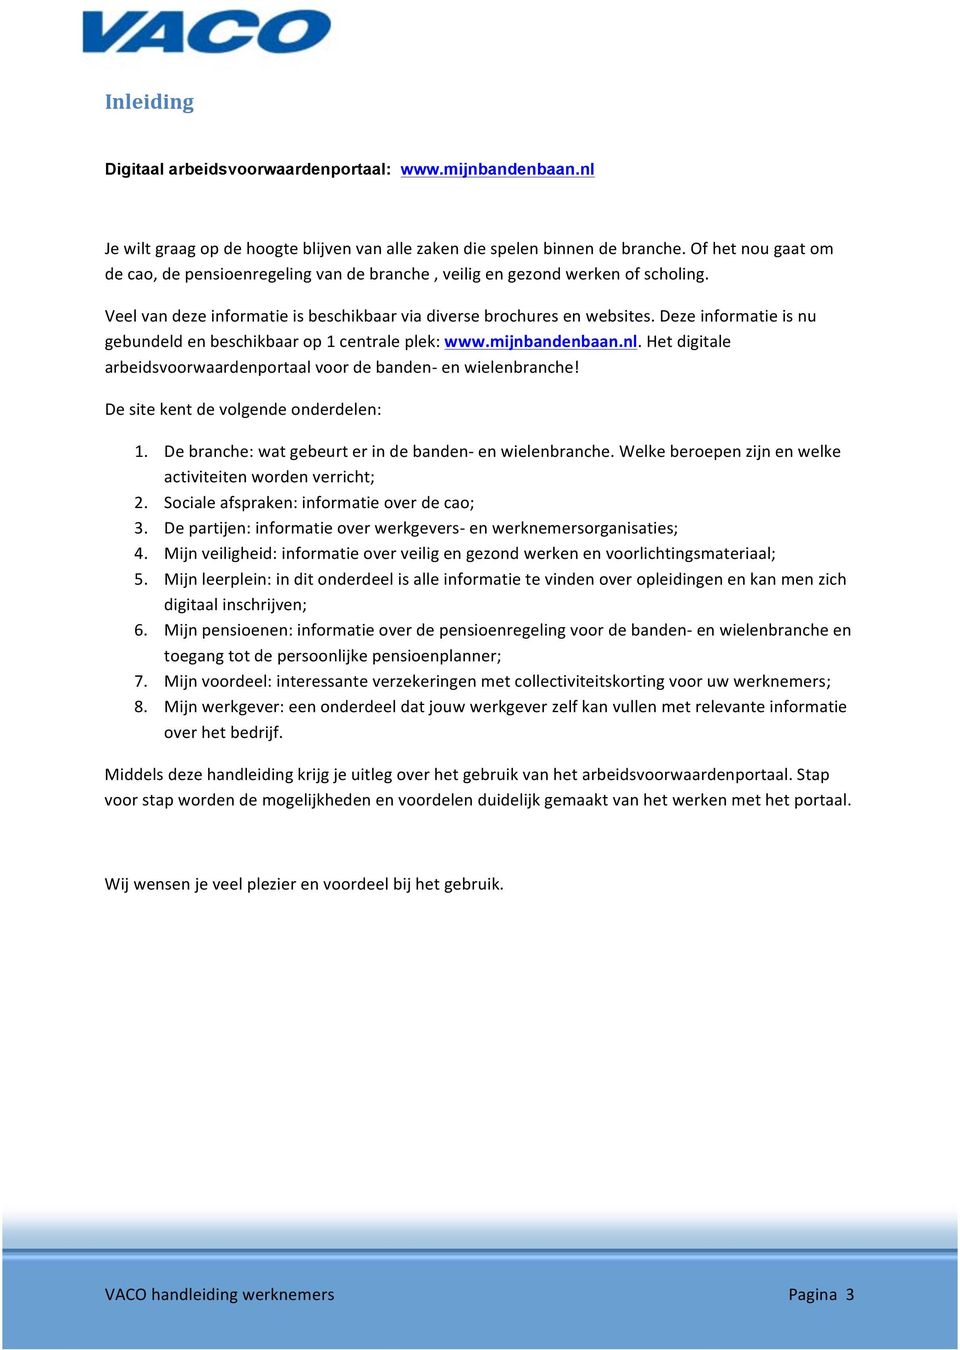 Deze informatie is nu gebundeld en beschikbaar op 1 centrale plek: www.mijnbandenbaan.nl. Het digitale arbeidsvoorwaardenportaal voor de banden- en wielenbranche!